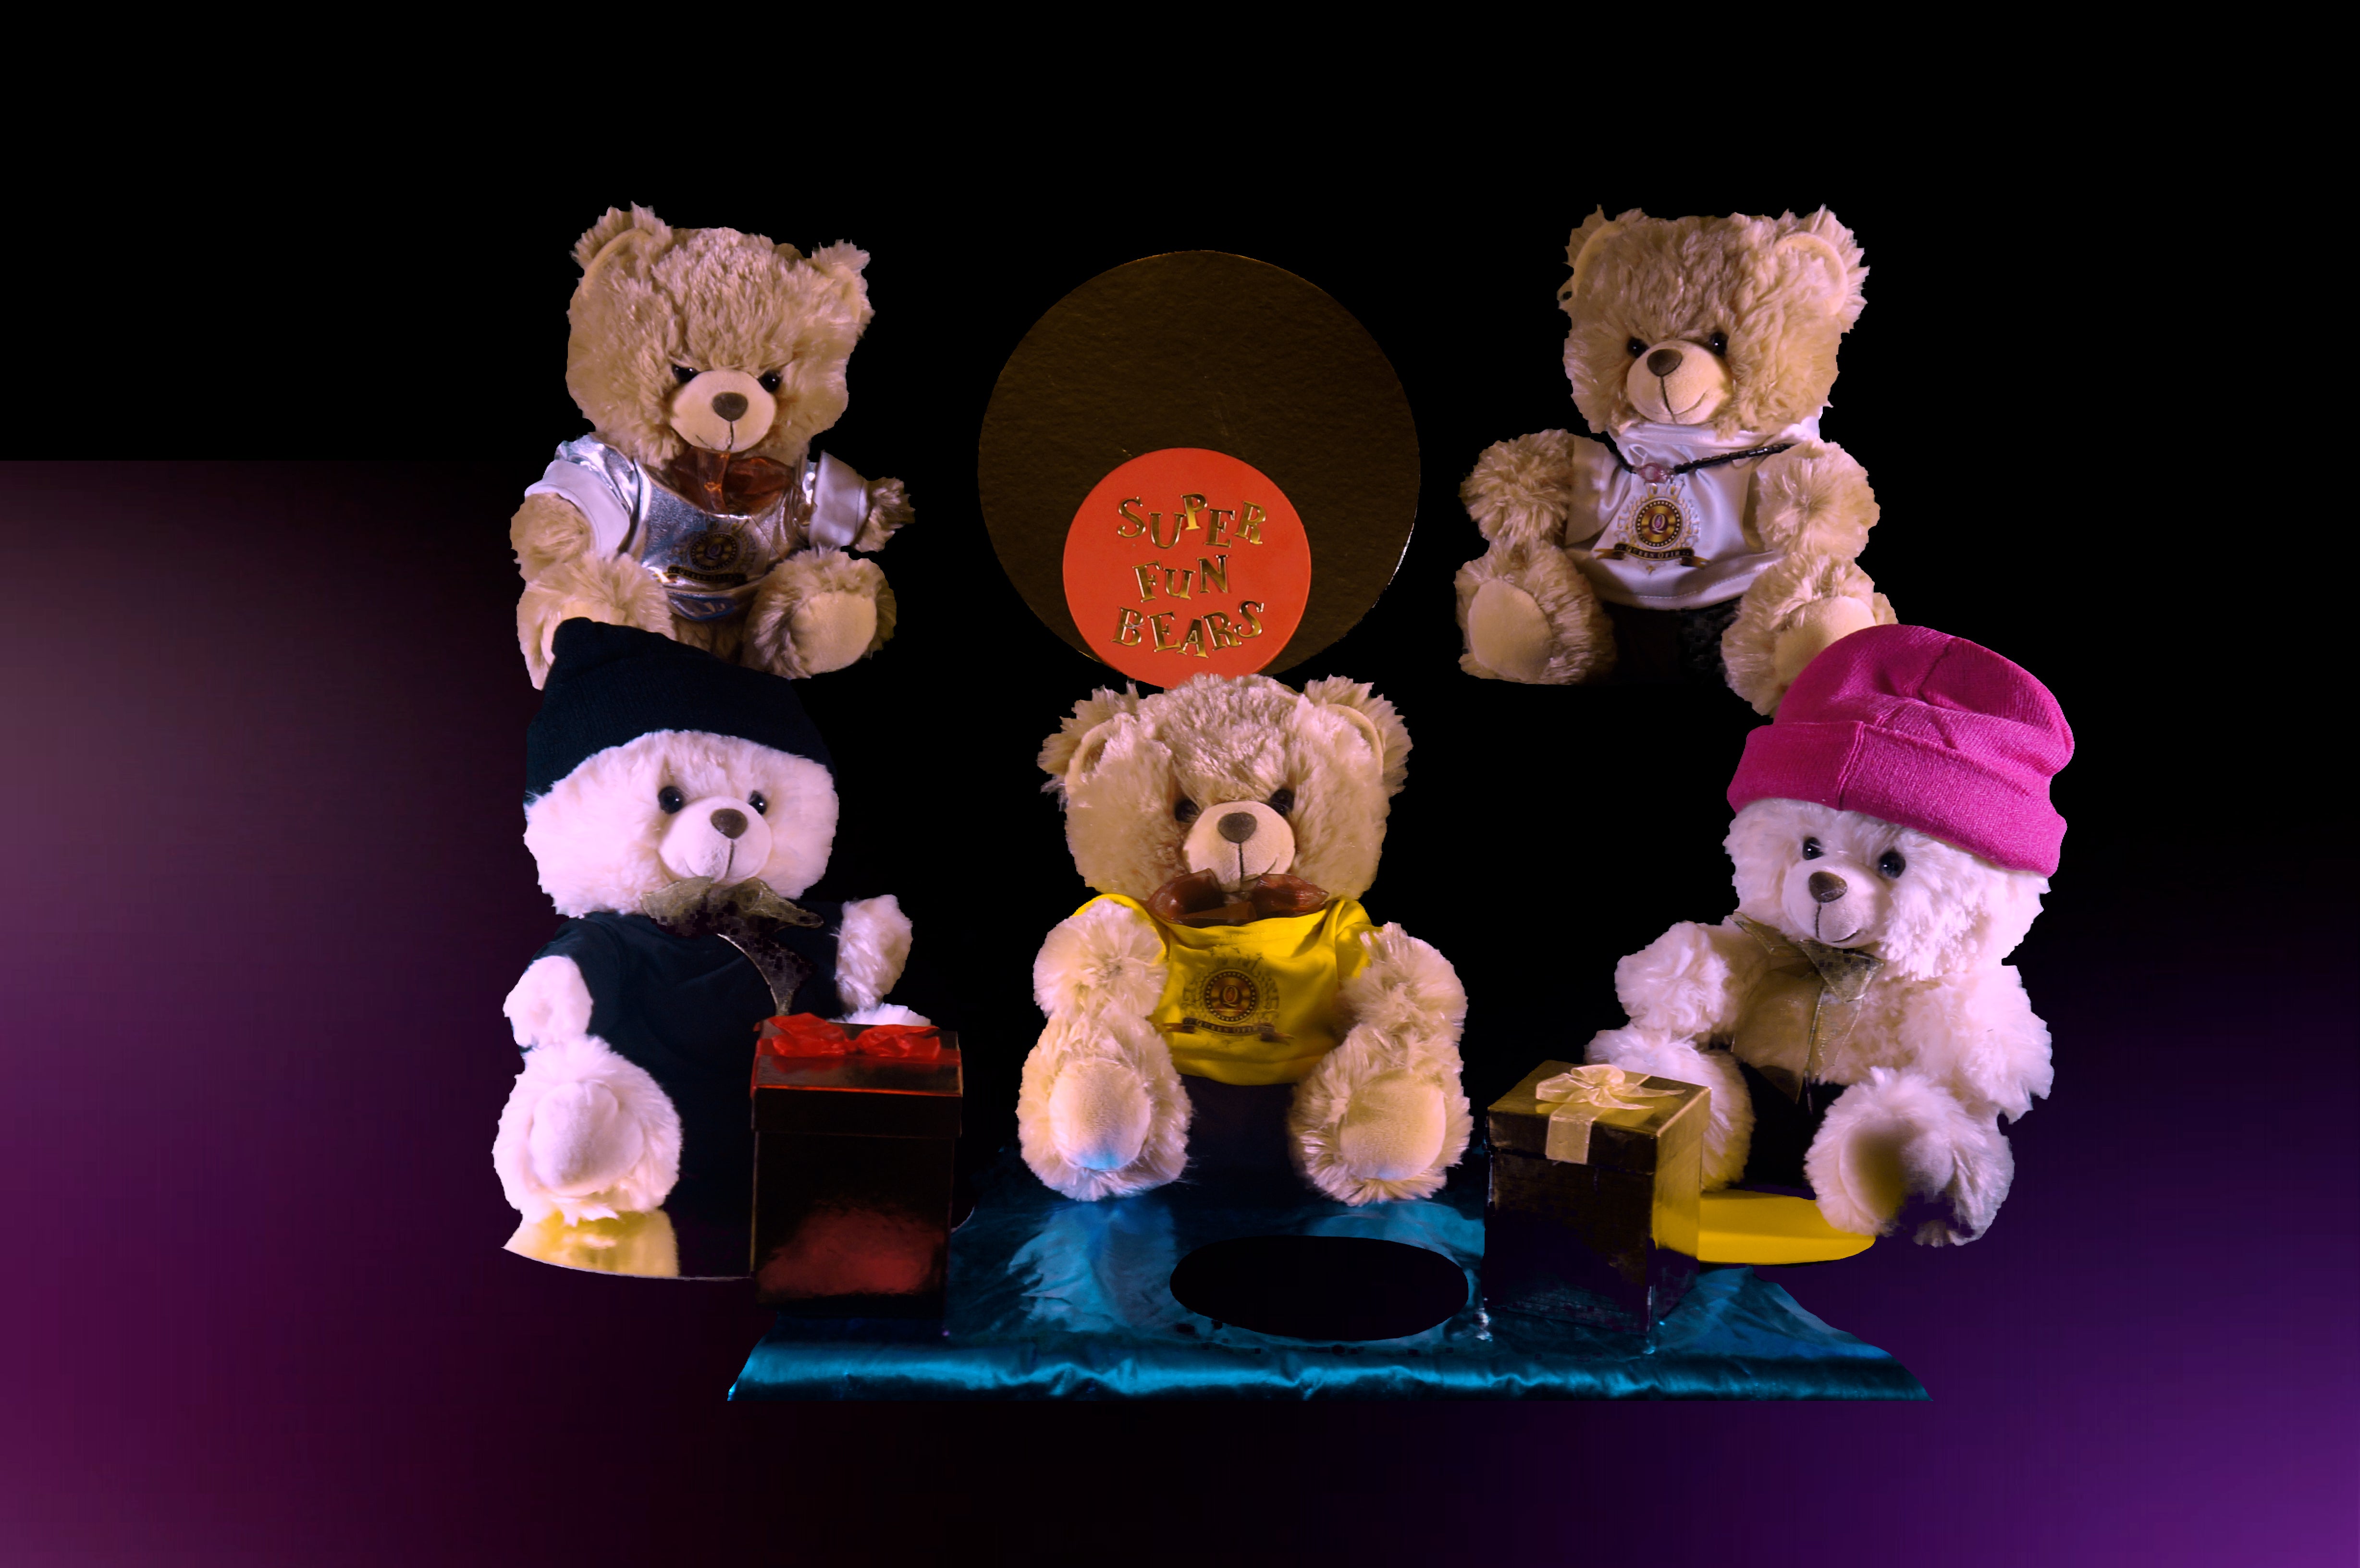 Queen Ofir's Adorable and Super Fun Bears Collection